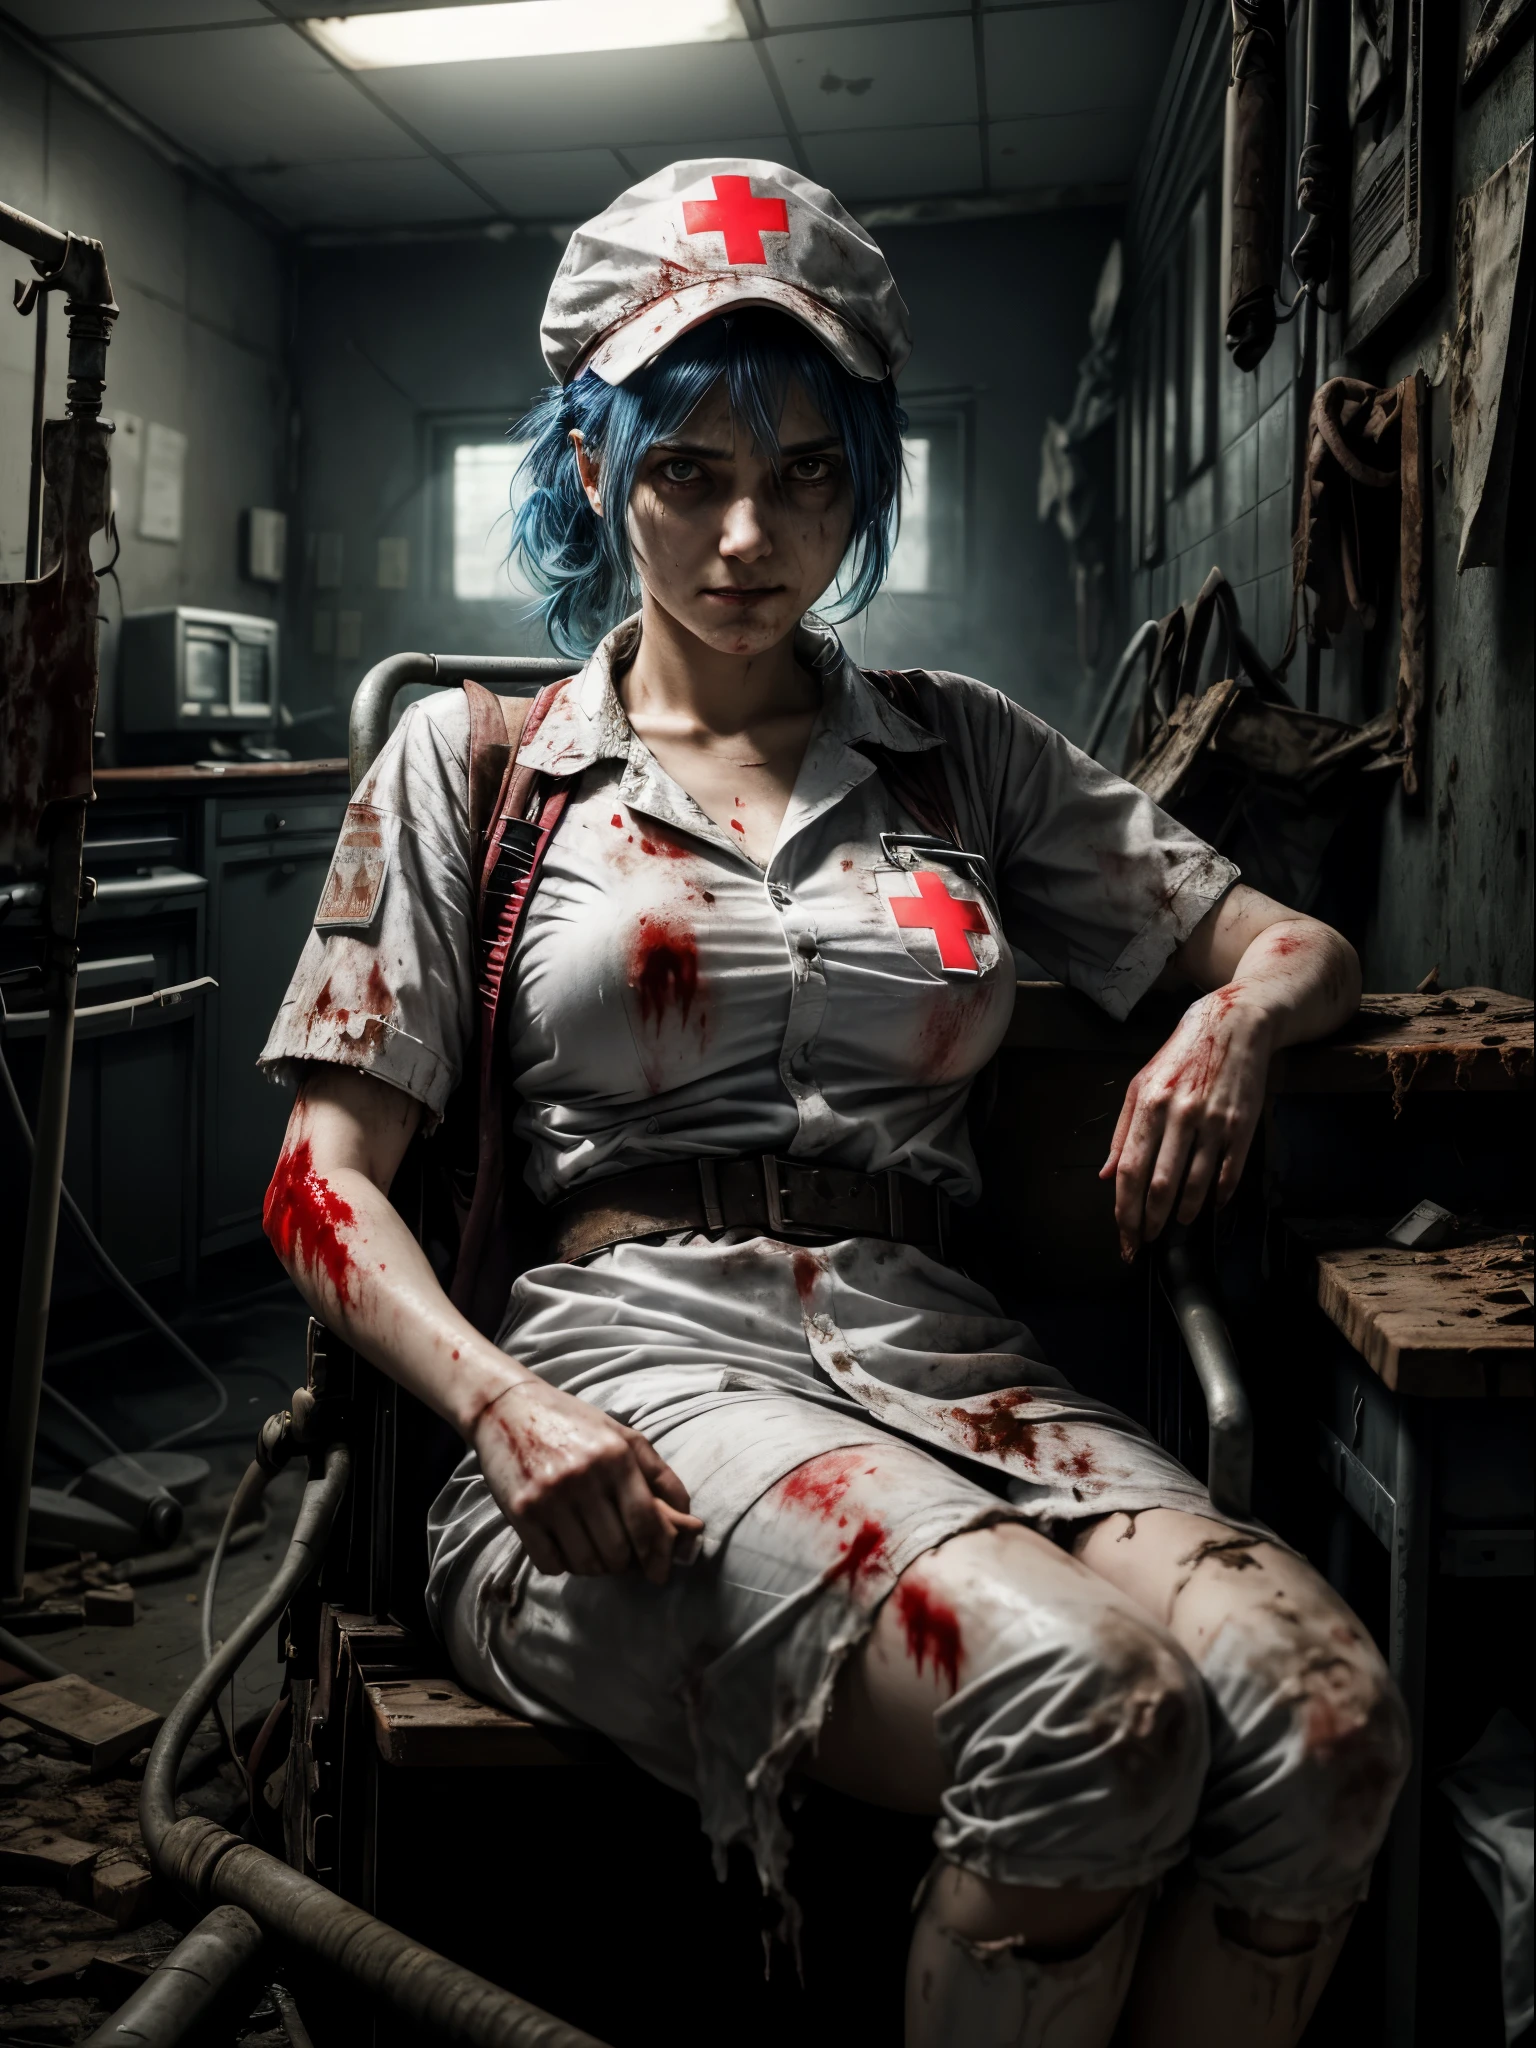 Шедевр в максимальном разрешении 16К, жуткий стиль Silent Hill. | 20-летняя женщина, носит костюм медсестры, весь в белом, now грязный, разорванный, и обагренный кровью. Ее тело демонстрирует признаки напряжения, покрытый потом, как она смотрит на зрителя решительным взглядом и злой улыбкой. Ее короткий, синие волосы с объемной челкой перед правым глазом дополнены жуткой шапочкой медсестры., с красным крестом в центре. На фоне ухудшения, грязный, и жуткая больница, наполненная разрушенными больничными машинами, старые и сломанные кровати, кровавые демоны, жуткие алтари, скалистые структуры, протекающие трубы, и испорченные компьютеры. Стиль Silent Hill пронизывает сцену, погружая его в демоническую атмосферу ужаса и террора. | Композиция сцены подчеркивает разложение и ужас., использование темных углов и игры света и тени для усиления мрачной атмосферы. Такие детали, как кровь на костюмах., зловещее выражение лица персонажа, и разрушение больницы способствуют созданию визуально впечатляющего впечатления.. | Сцена жуткой женщины в костюме медсестры, погружен в среду Silent Hill, полную демонов и разрушений, с ее решительным взглядом и злой улыбкой. | {Камера расположена очень близко к ней., revealing her entire body as she adopts an злой_позаas, увлекательное взаимодействие и опирание на структуру на сцене} | Она принимает ((злой_позаas interacts, смело опираясь на конструкцию, откинувшись назад захватывающим образом):1.3), ((идеальный_поза)), ((все тело)), идеальный_пальцы, идеальный_ноги, &quot;Более детально&quot;